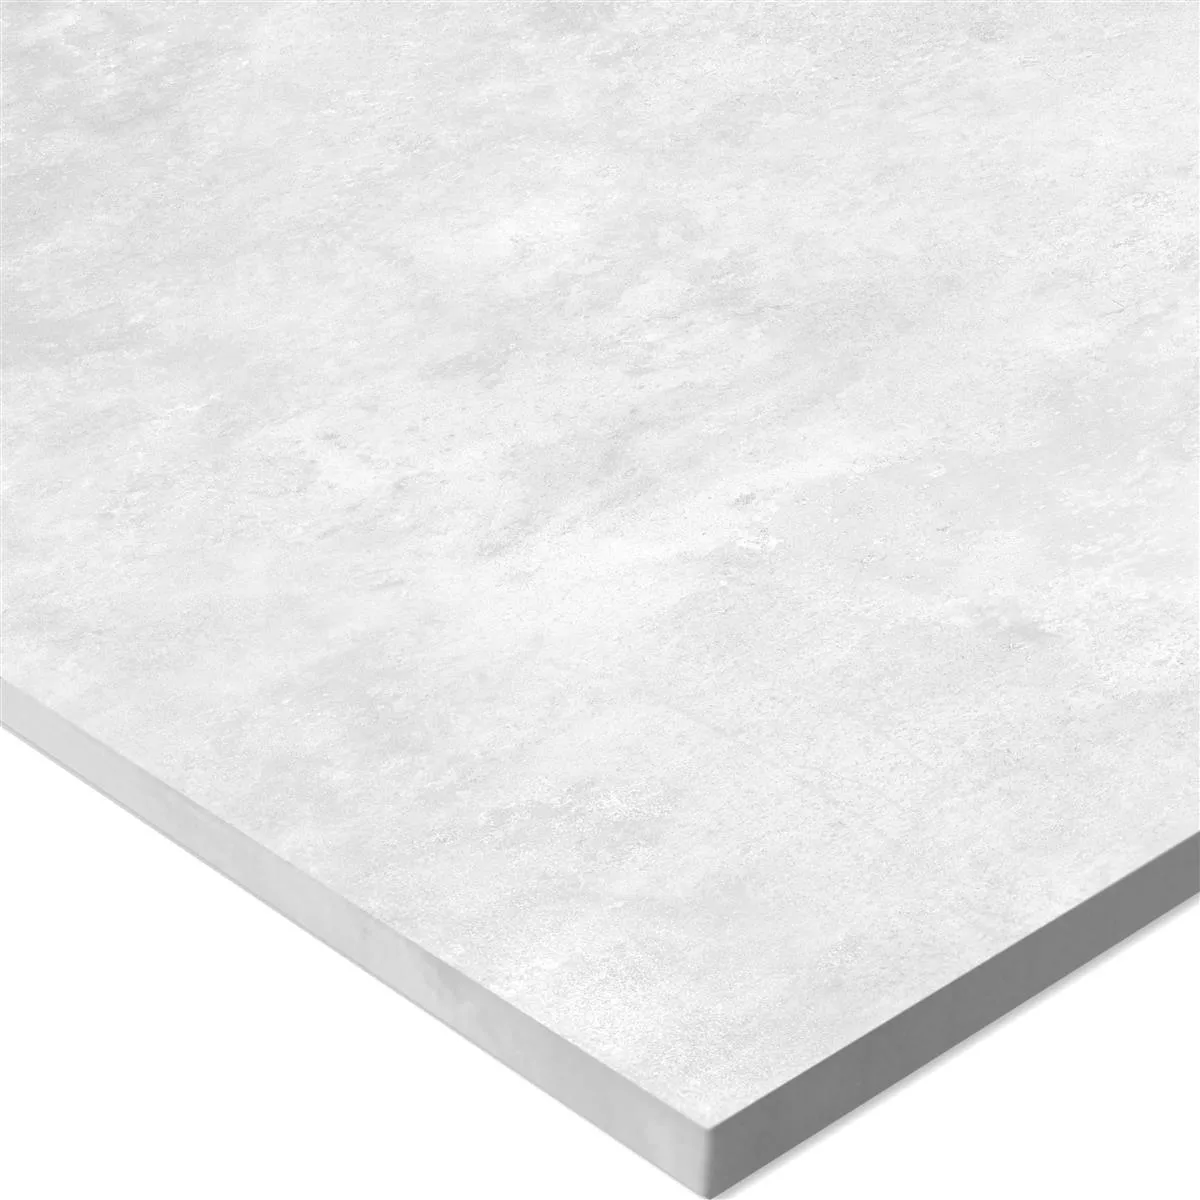 Piastrelle Illusion Ottica Metallo Lappato Bianco 30x60cm